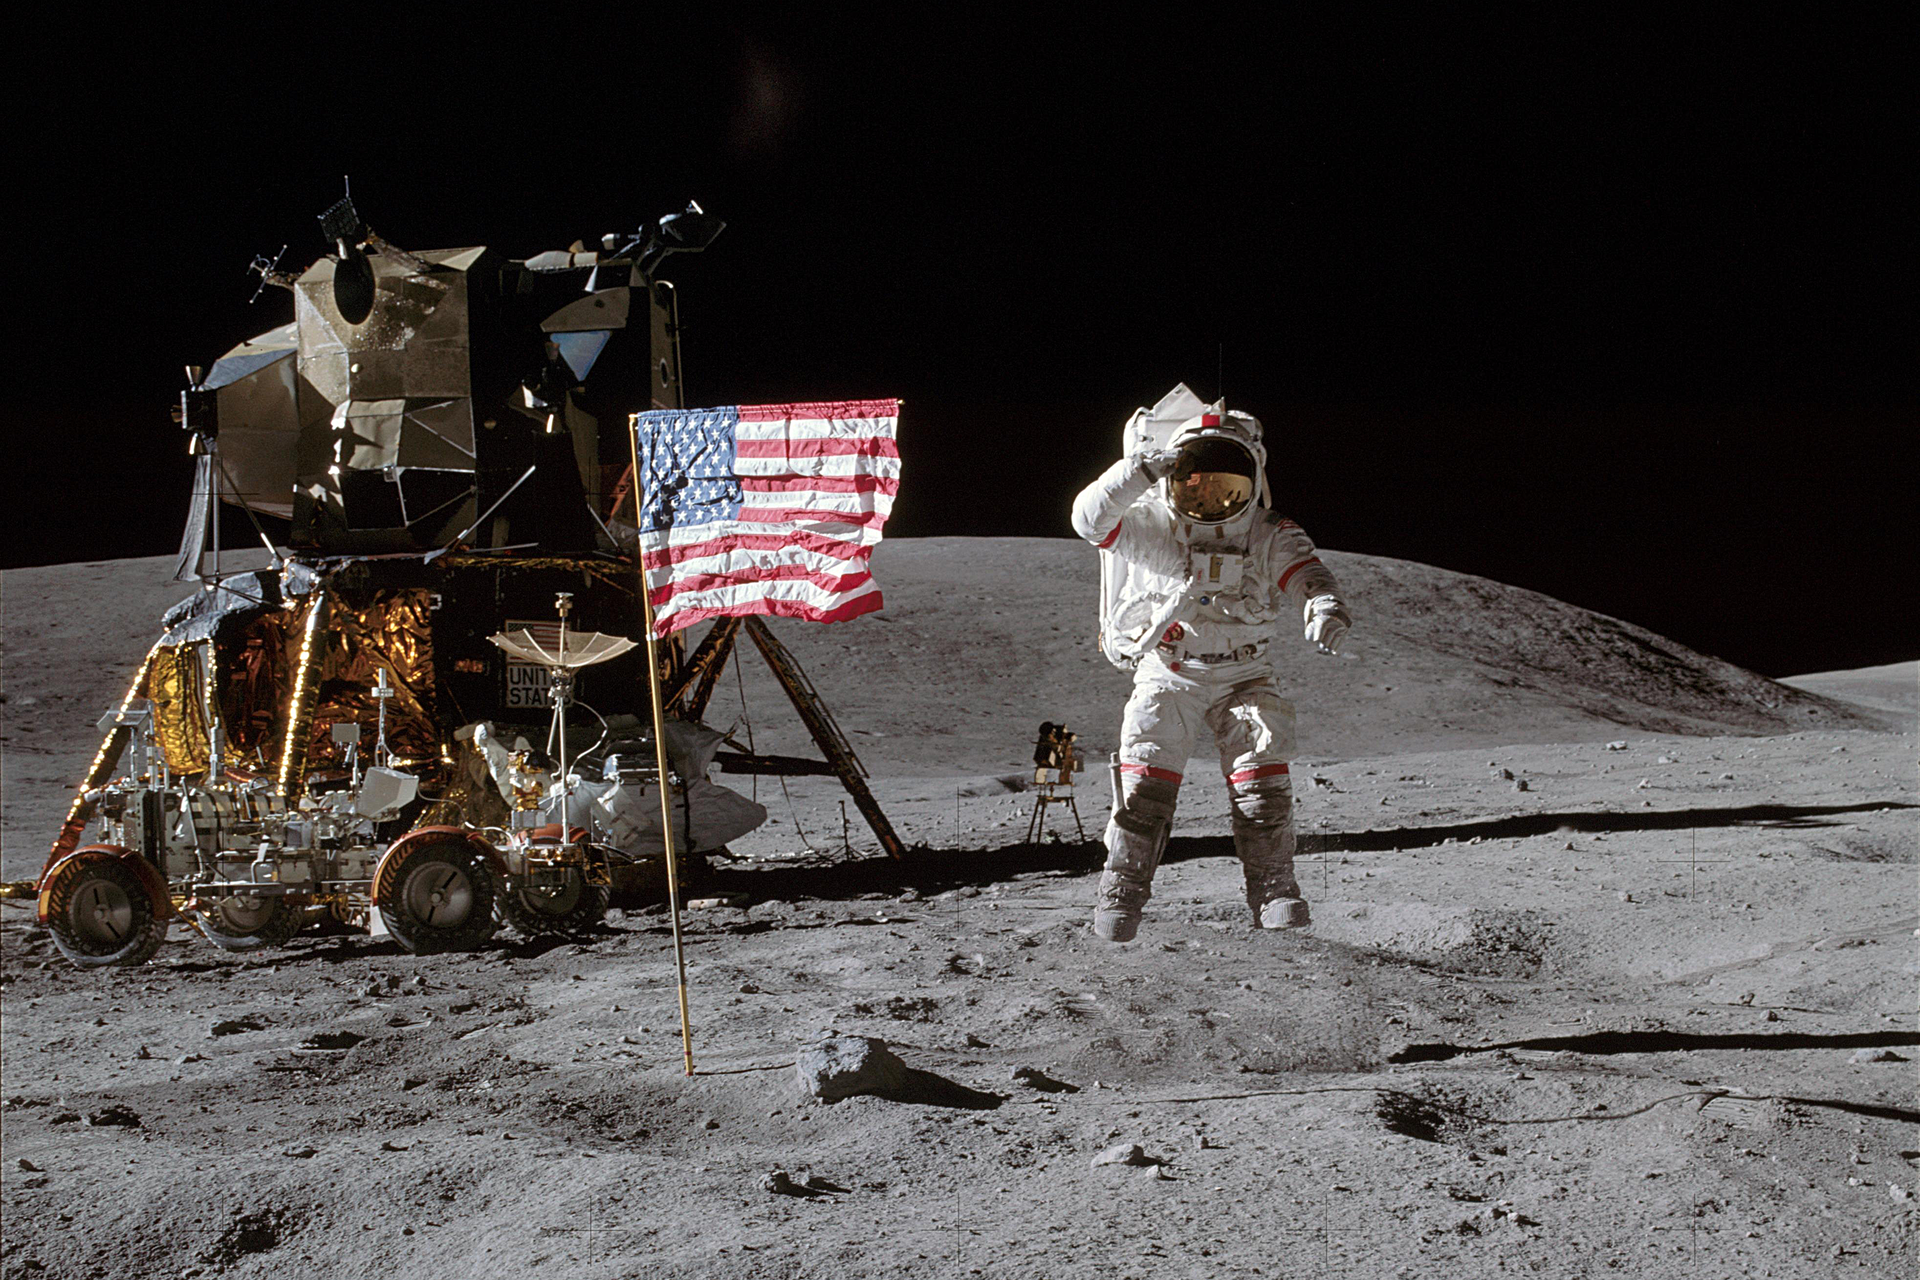 Fotografia prezentuje pierwszego człowieka na księżycu. Na pierwszym planie widoczny kosmonauta w białym kombinezonie stojący na powierzchni księżyca, po jego prawej stronie powiewa flaga amerykańska. Na lewo od kosmonauty widoczny pojazd, w tle czarne niebo.